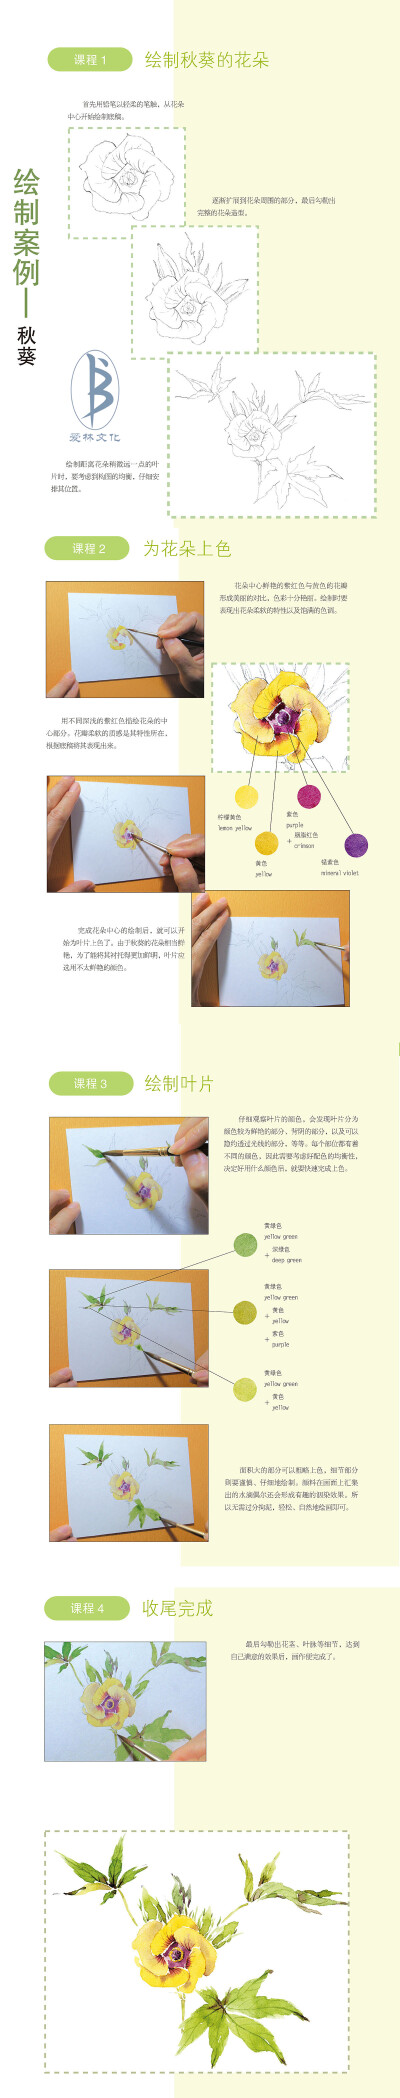 本案例摘自人民邮电出版社出版的《水彩花时间：60种你可能从来没画过的水色闲花》--爱林文化制作
